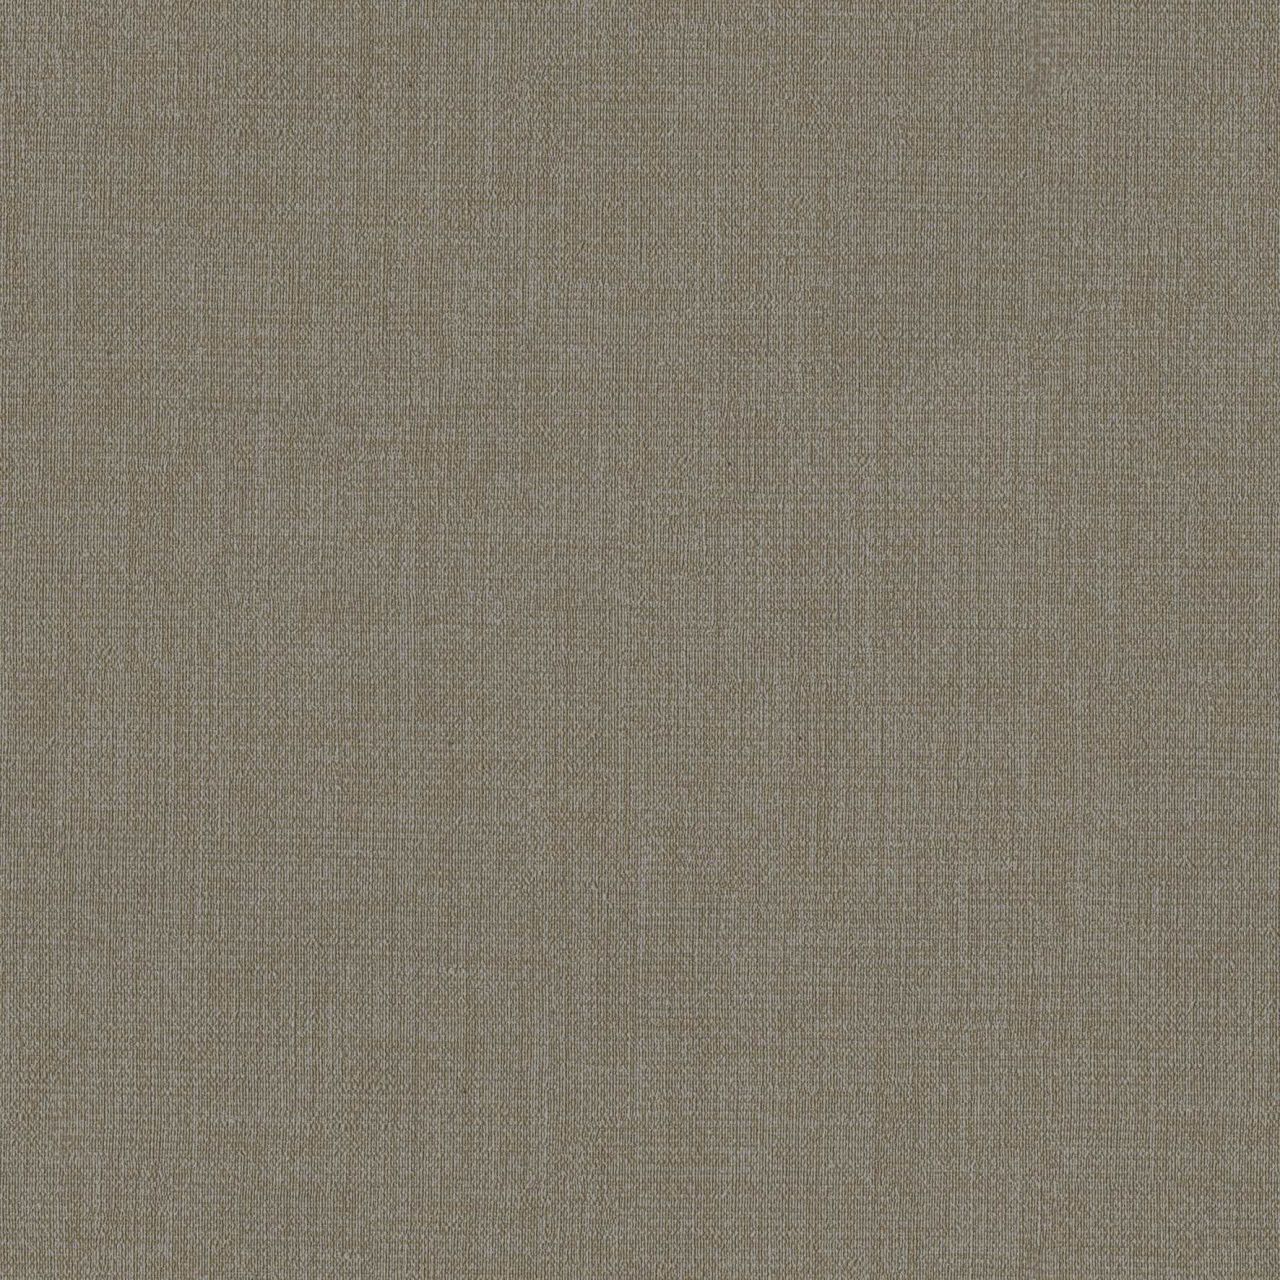 Edo-Tex Beylerbeyi JK 0013 Tekstil Tabanlı Duvar Kağıdı